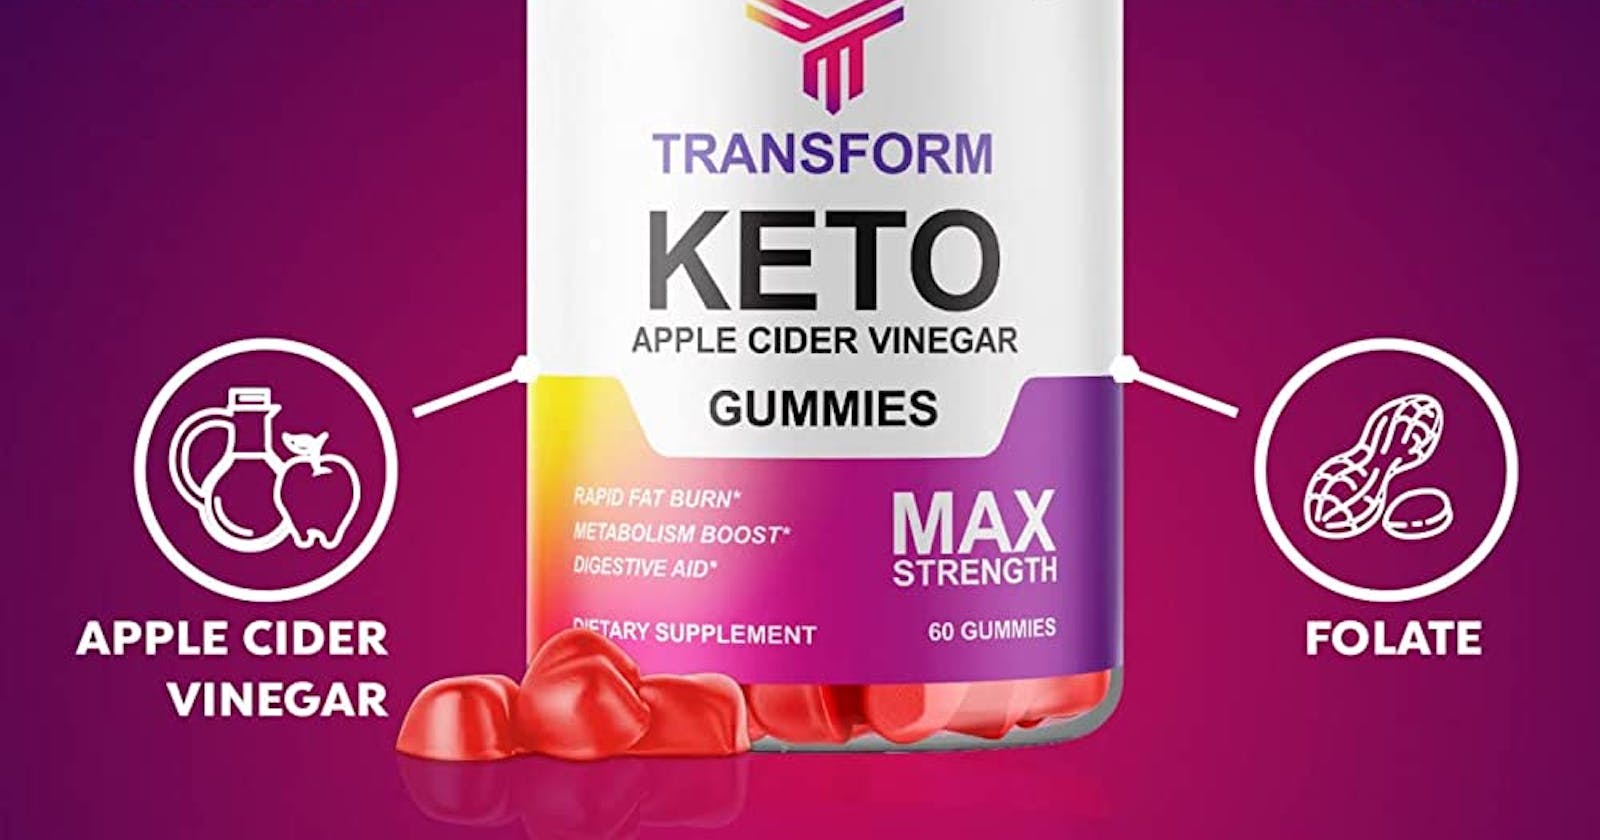 Transform Keto ACV Gummies United States of America